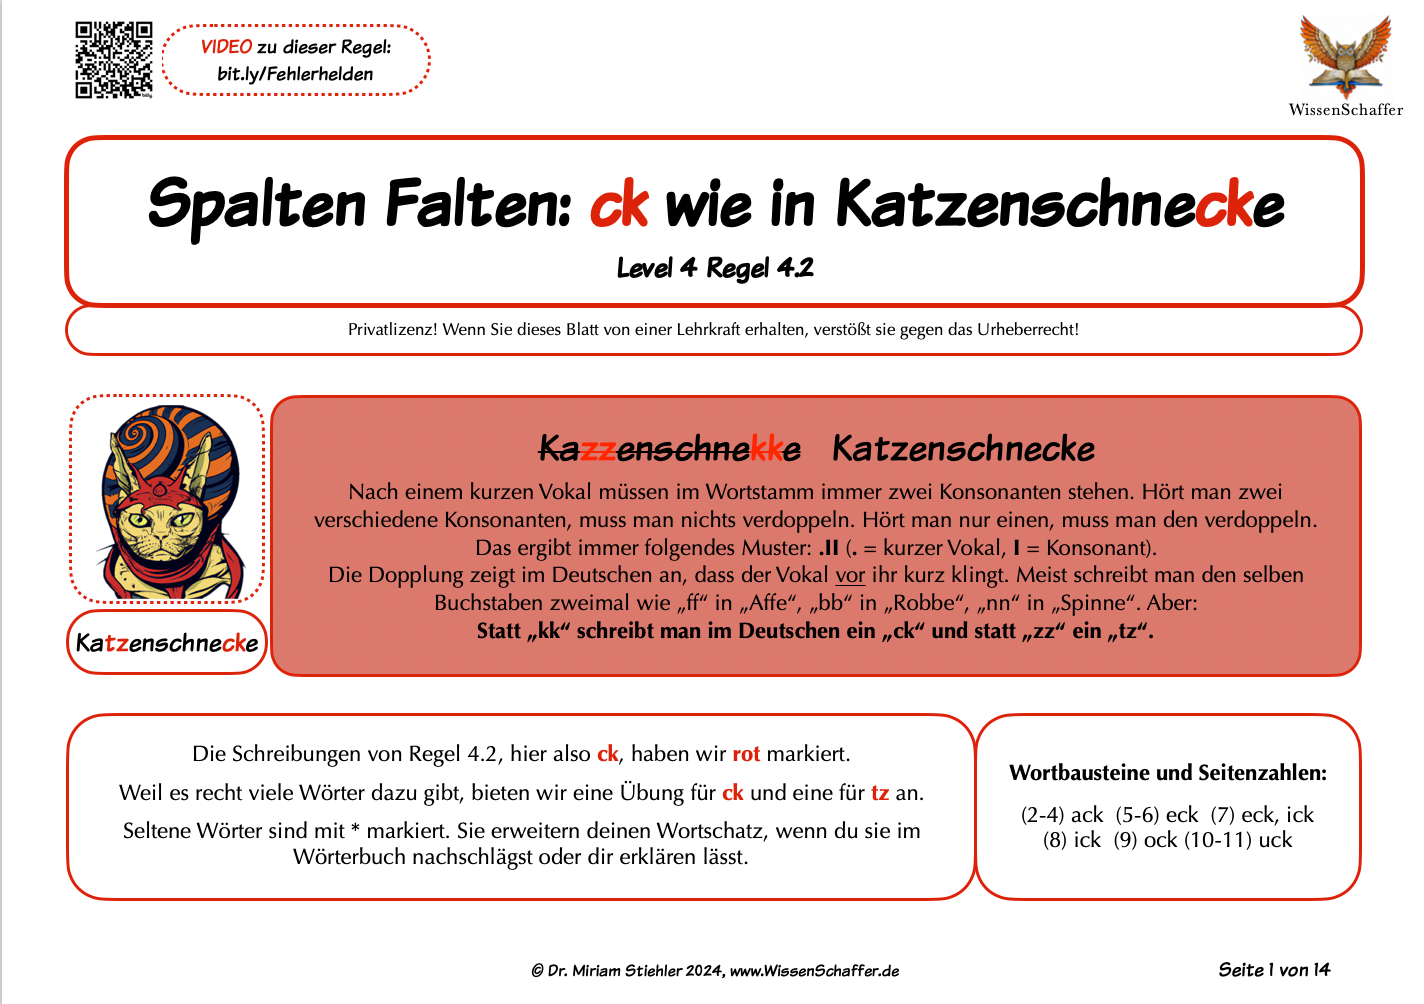 SpaltenFalten 4.2 "ck" wie in "Katzenschnecke" - Download